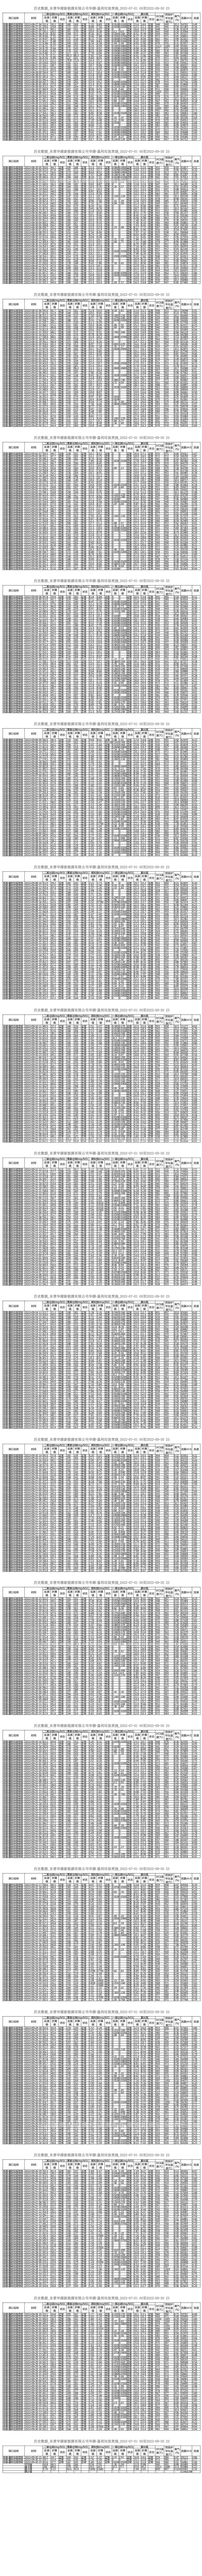 東營華源新能源有限公司第三季度檢測信息公示(圖17)